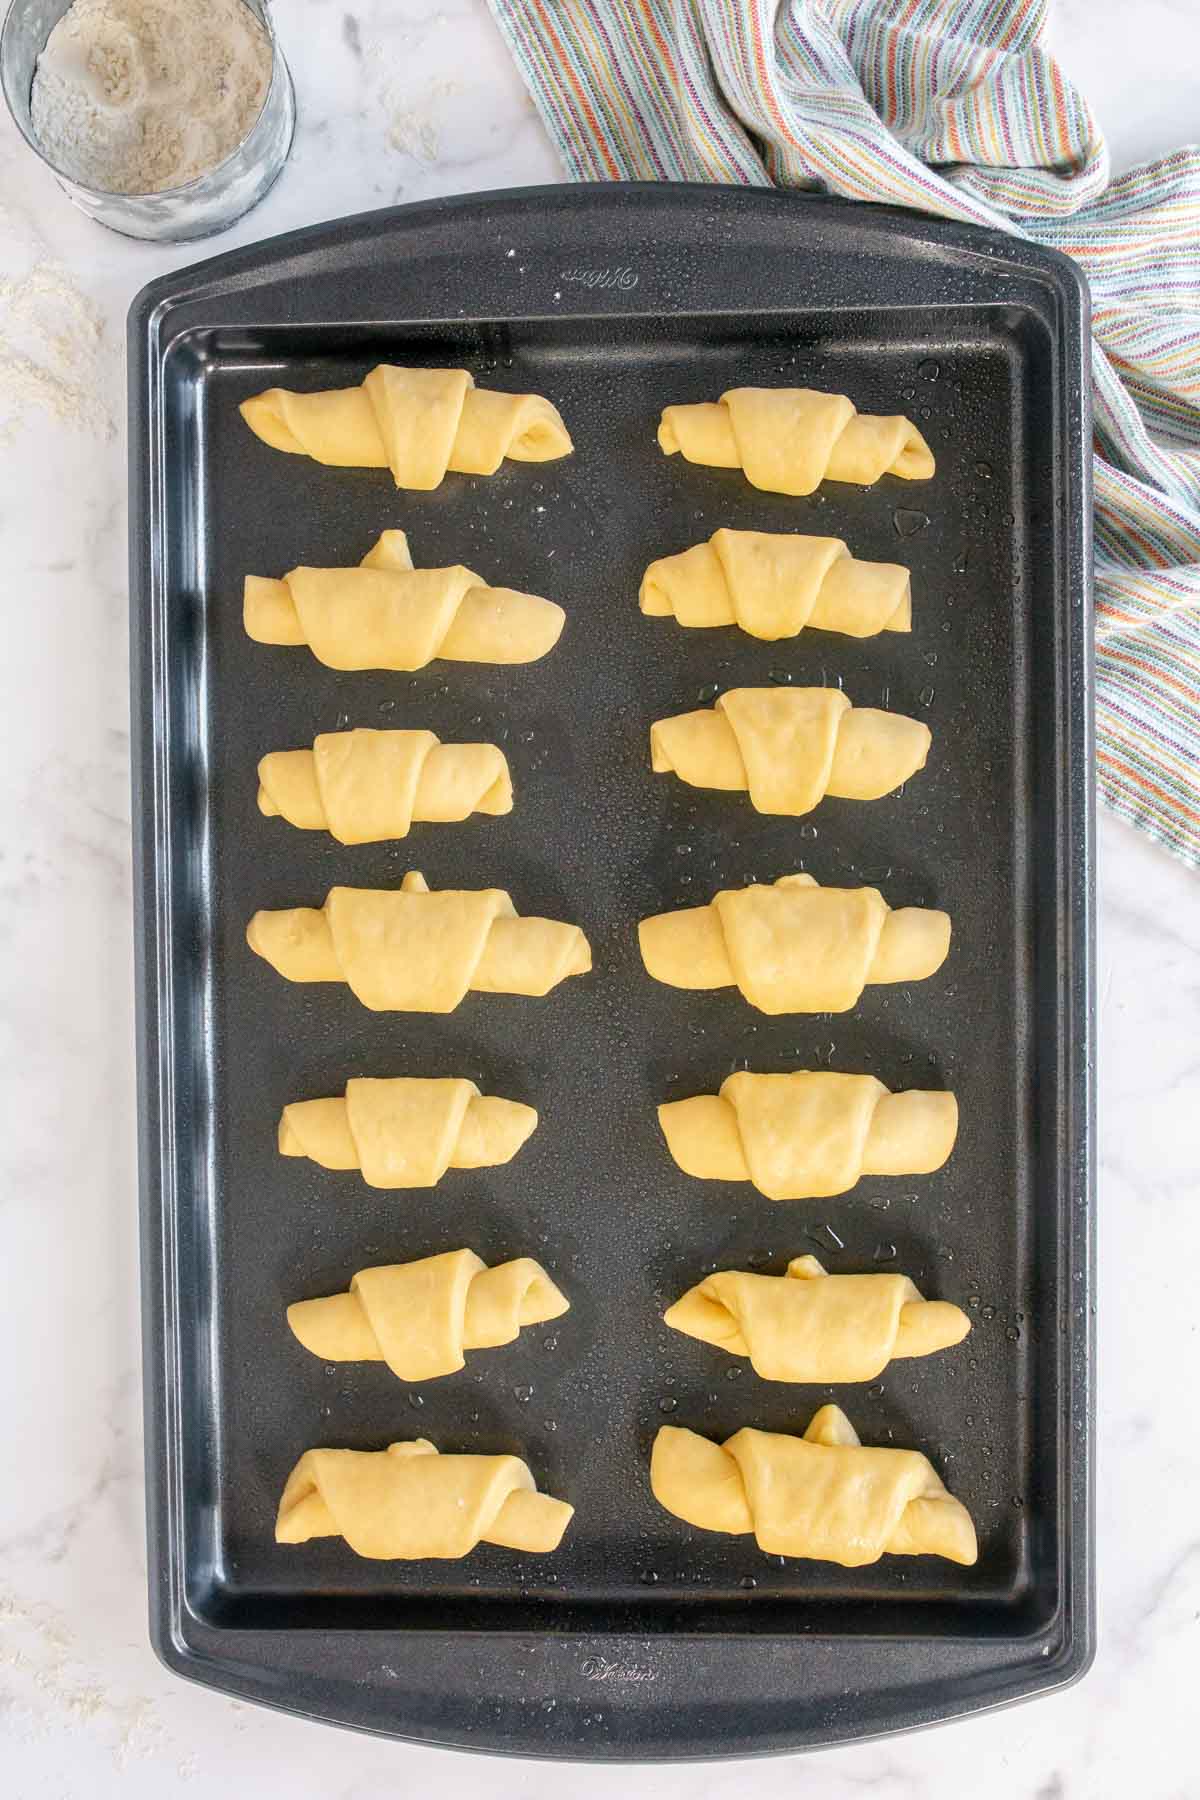 Homemade crescent rolls on a baking sheet